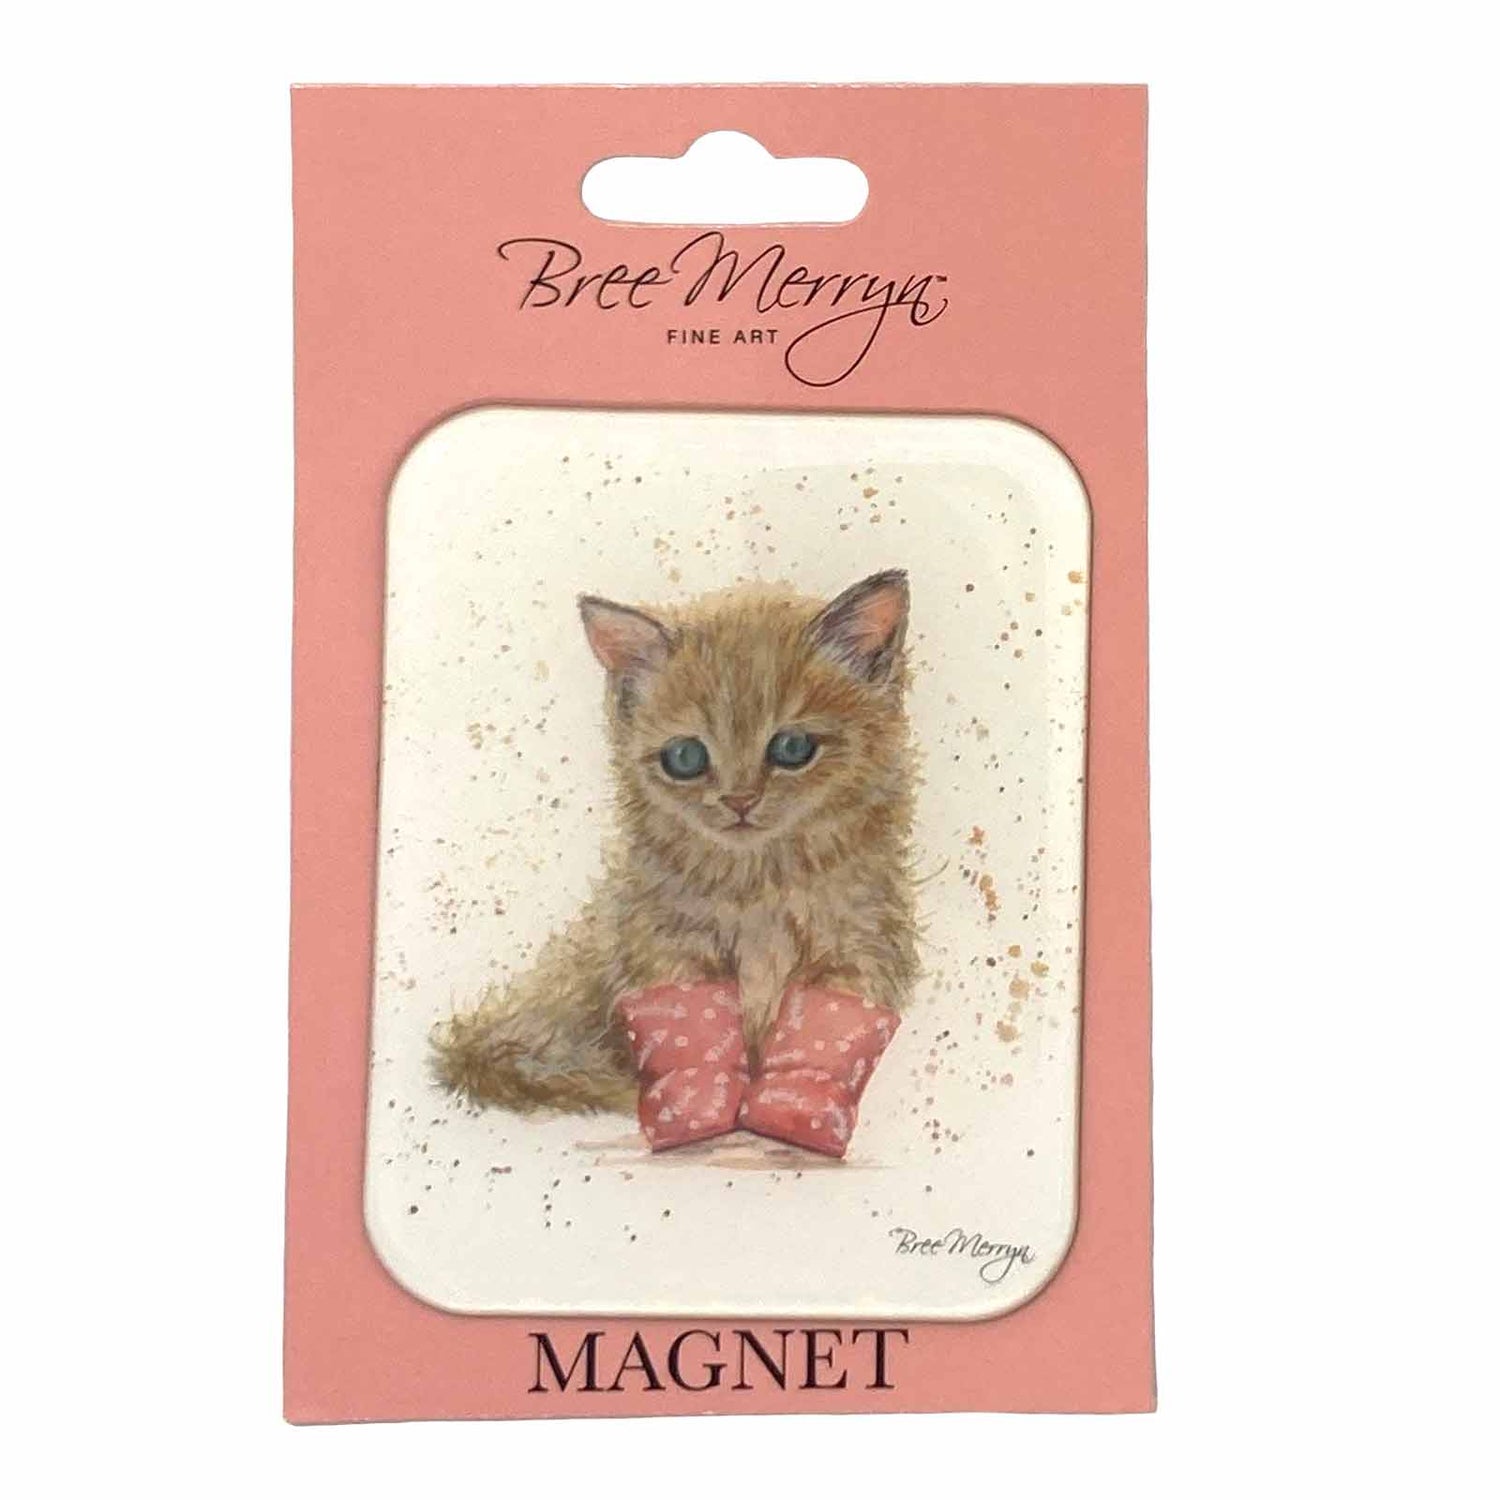 Bree Merryn Cuties in Booties Magnets - Marmalade Kitten Fridge Whiteboard Office Magnet